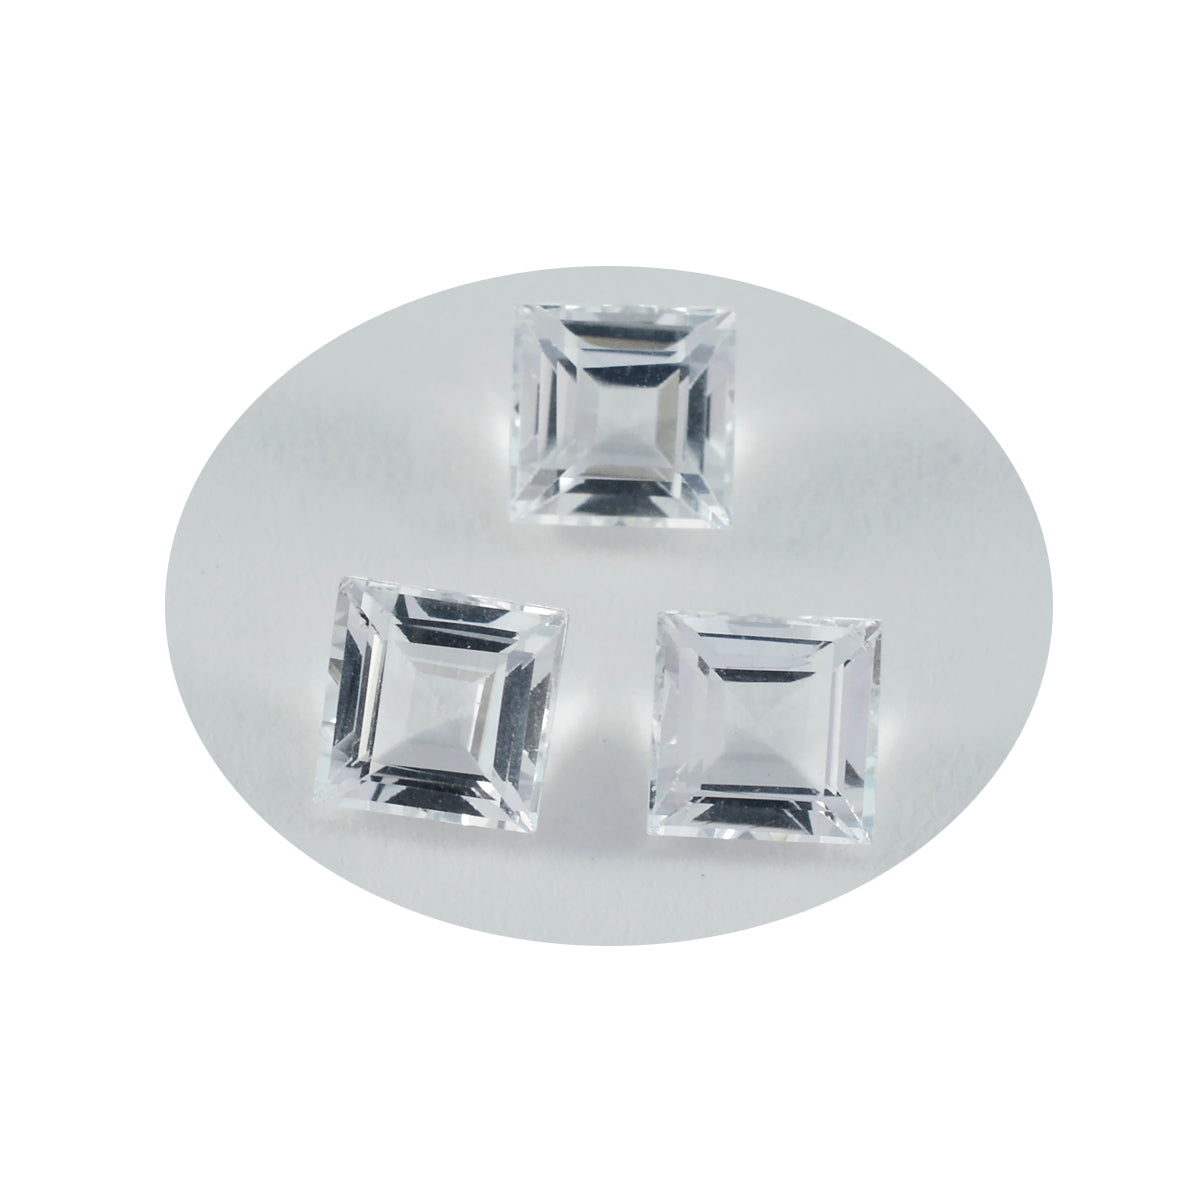 Riyogems 1 Stück weißer Kristallquarz, facettiert, 10 x 10 mm, quadratische Form, hübscher Qualitätsstein